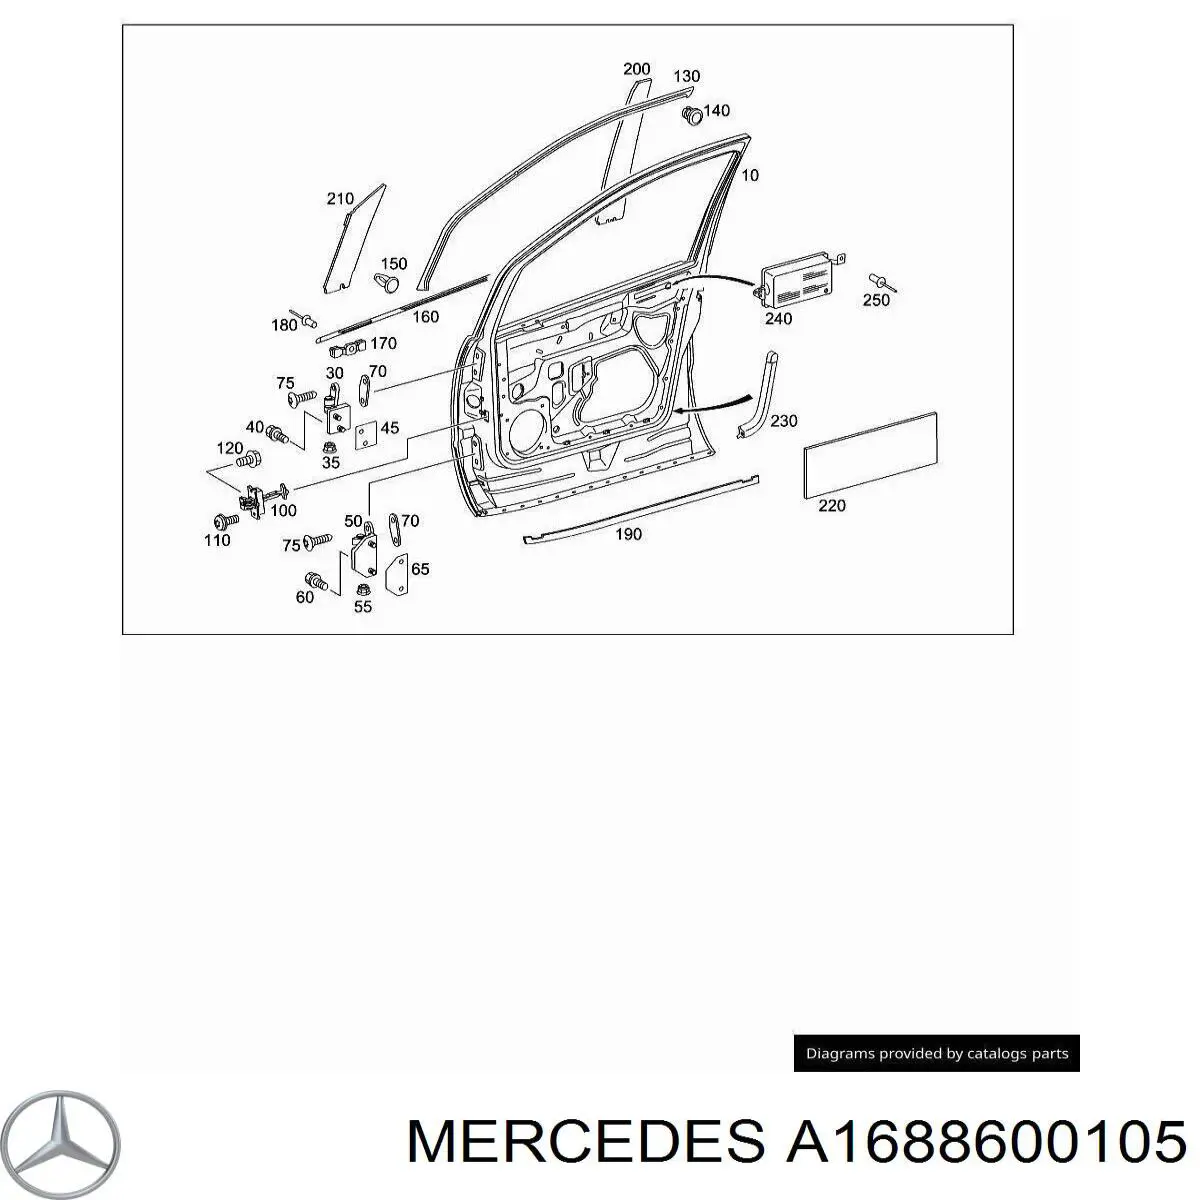 A1688600105 Mercedes airbag de la puerta delantera izquierda